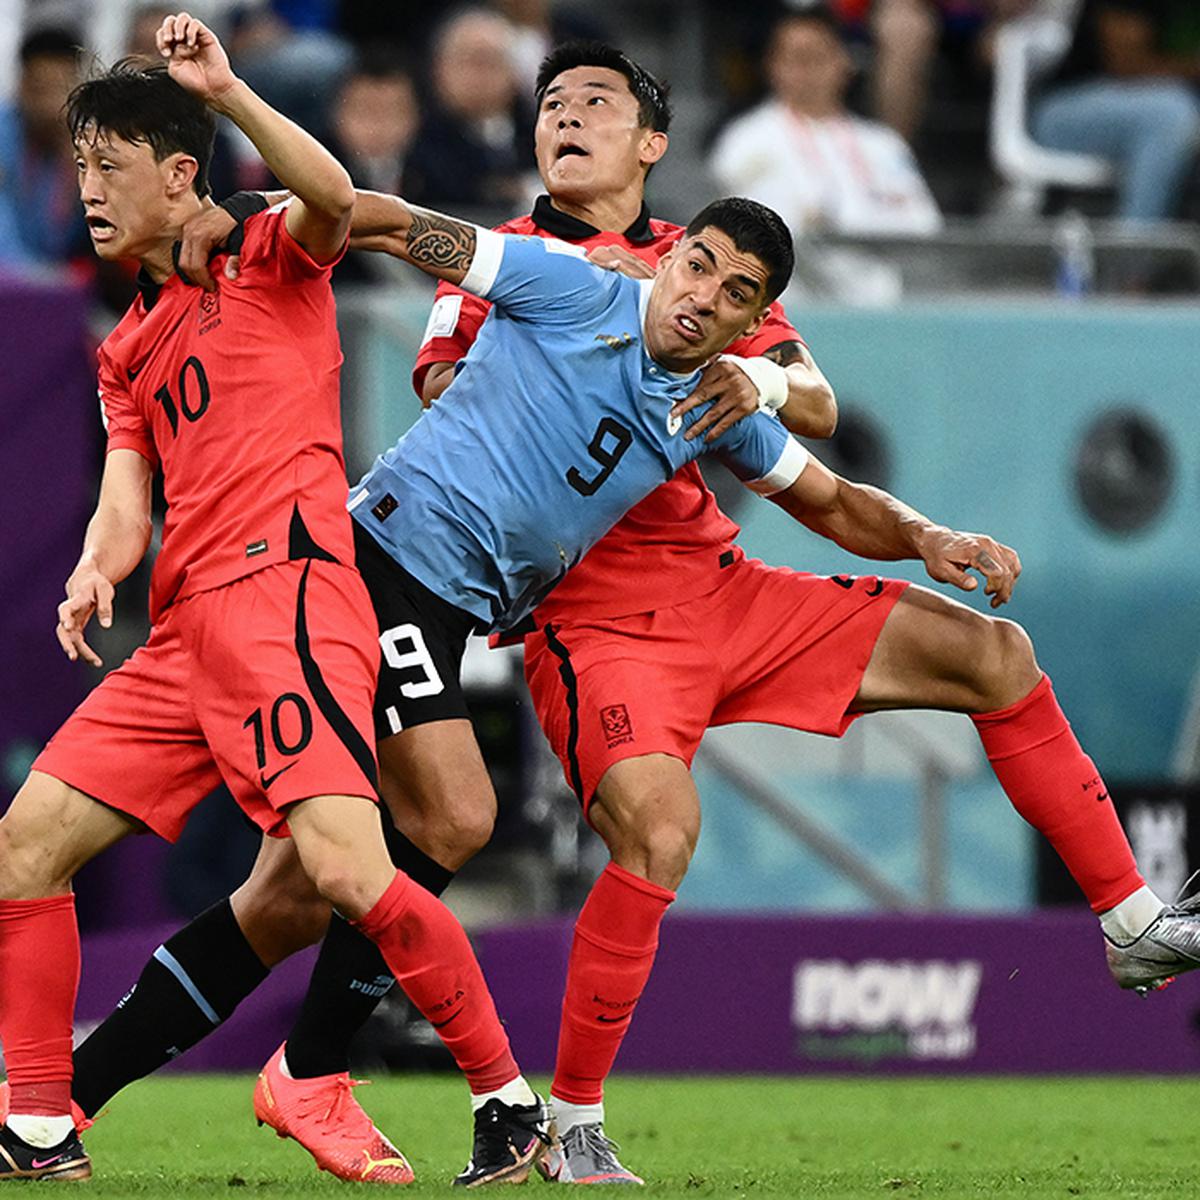 Selección de Uruguay: los 26 futbolistas convocados en la lista del Mundial  Qatar 2022, TUDN Selección Uruguay